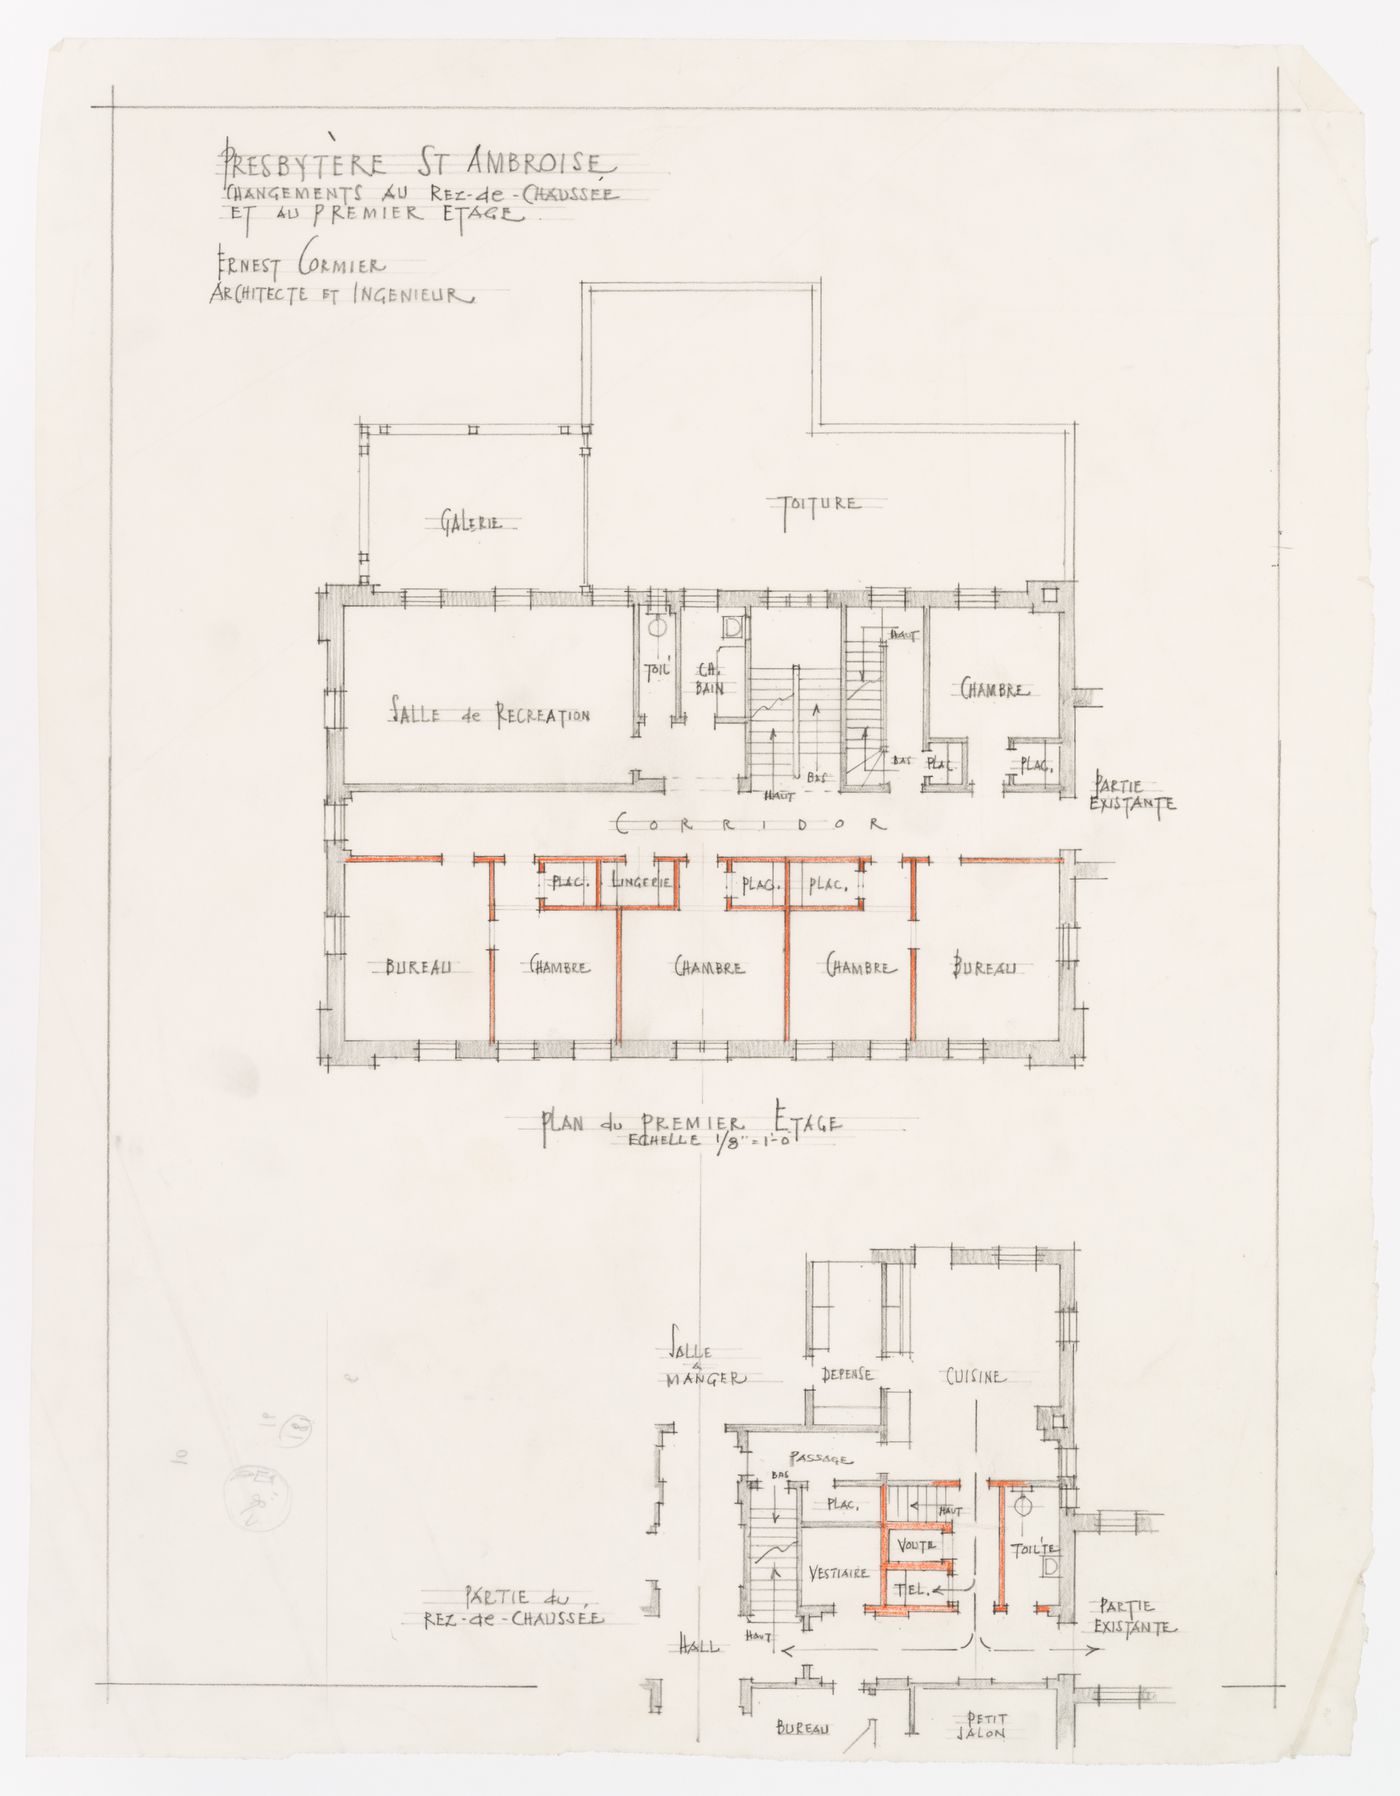 Plan des changements du rez-de-chaussé et du premier étage, Presbytère Saint-Ambroise, Montréal, Canada (1926-1929)